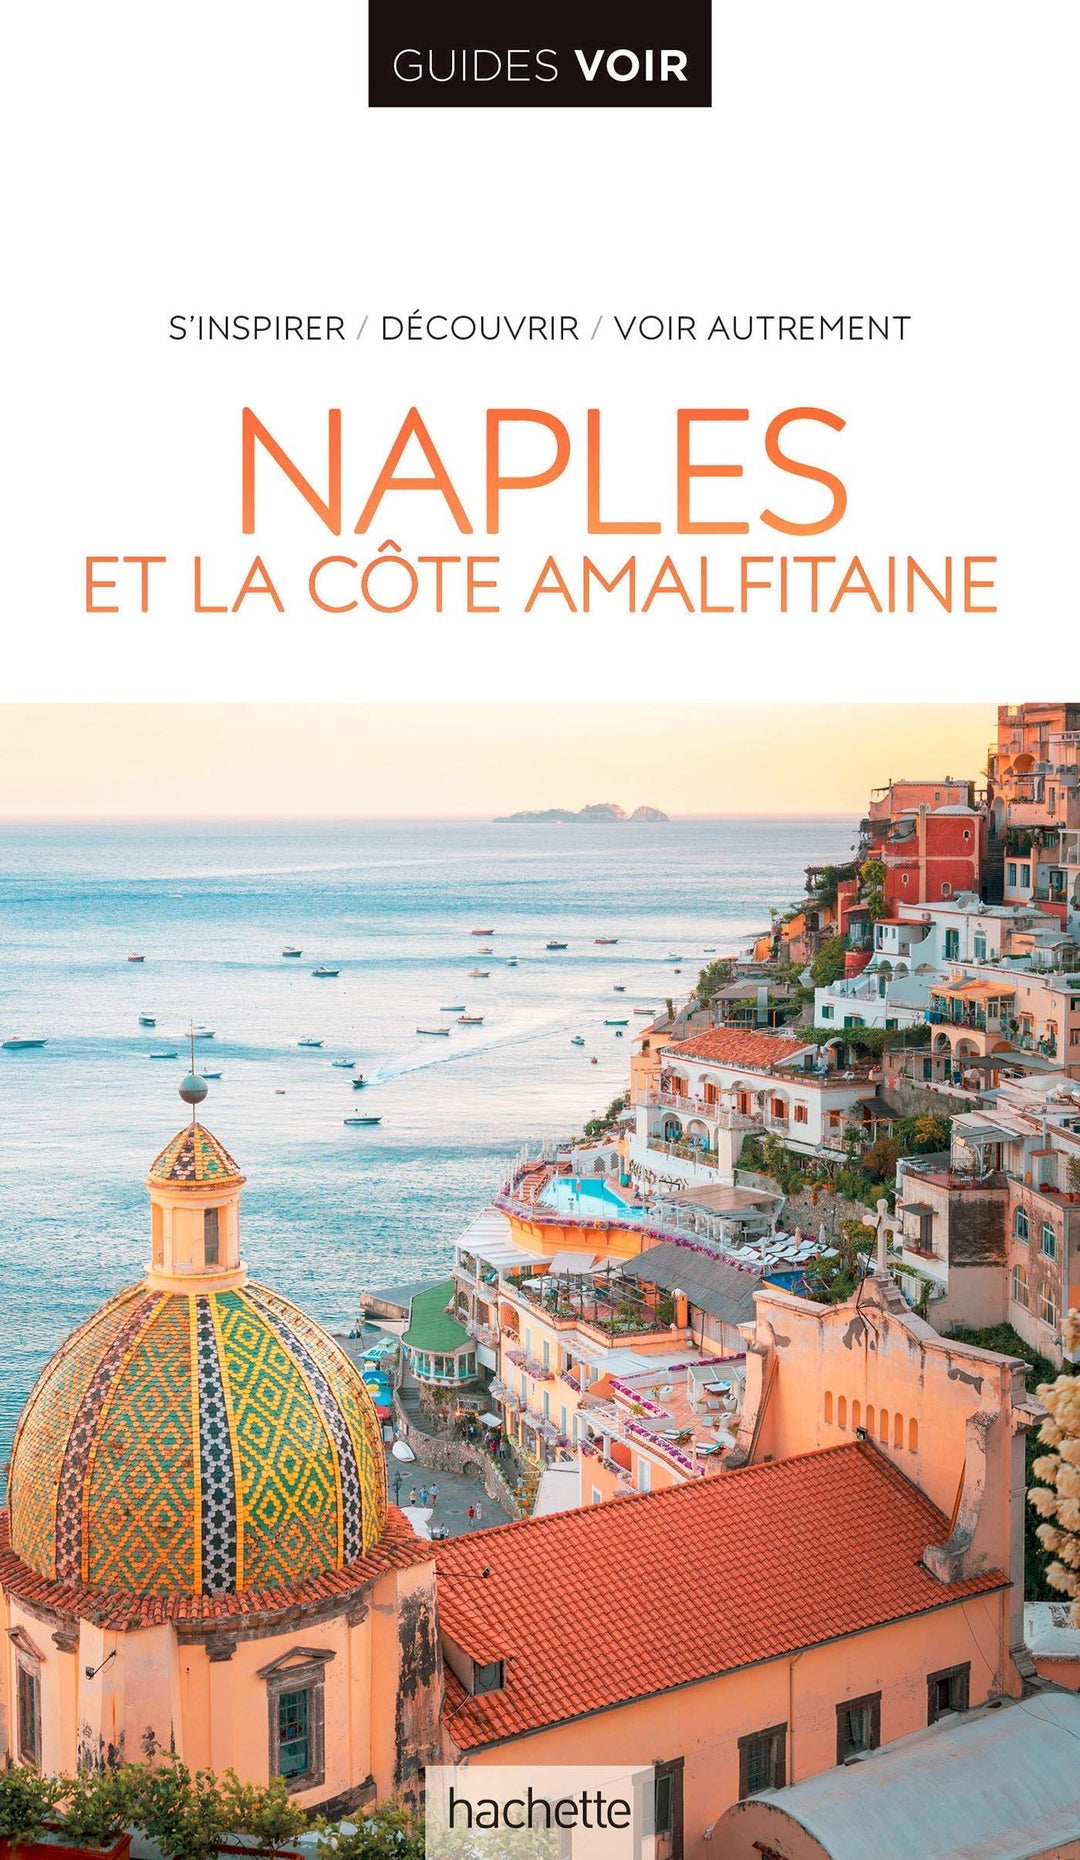 Guide de voyage - Naples & la côte amalfitaine - Édition 2021 | Guides Voir guide de voyage Guides Voir 